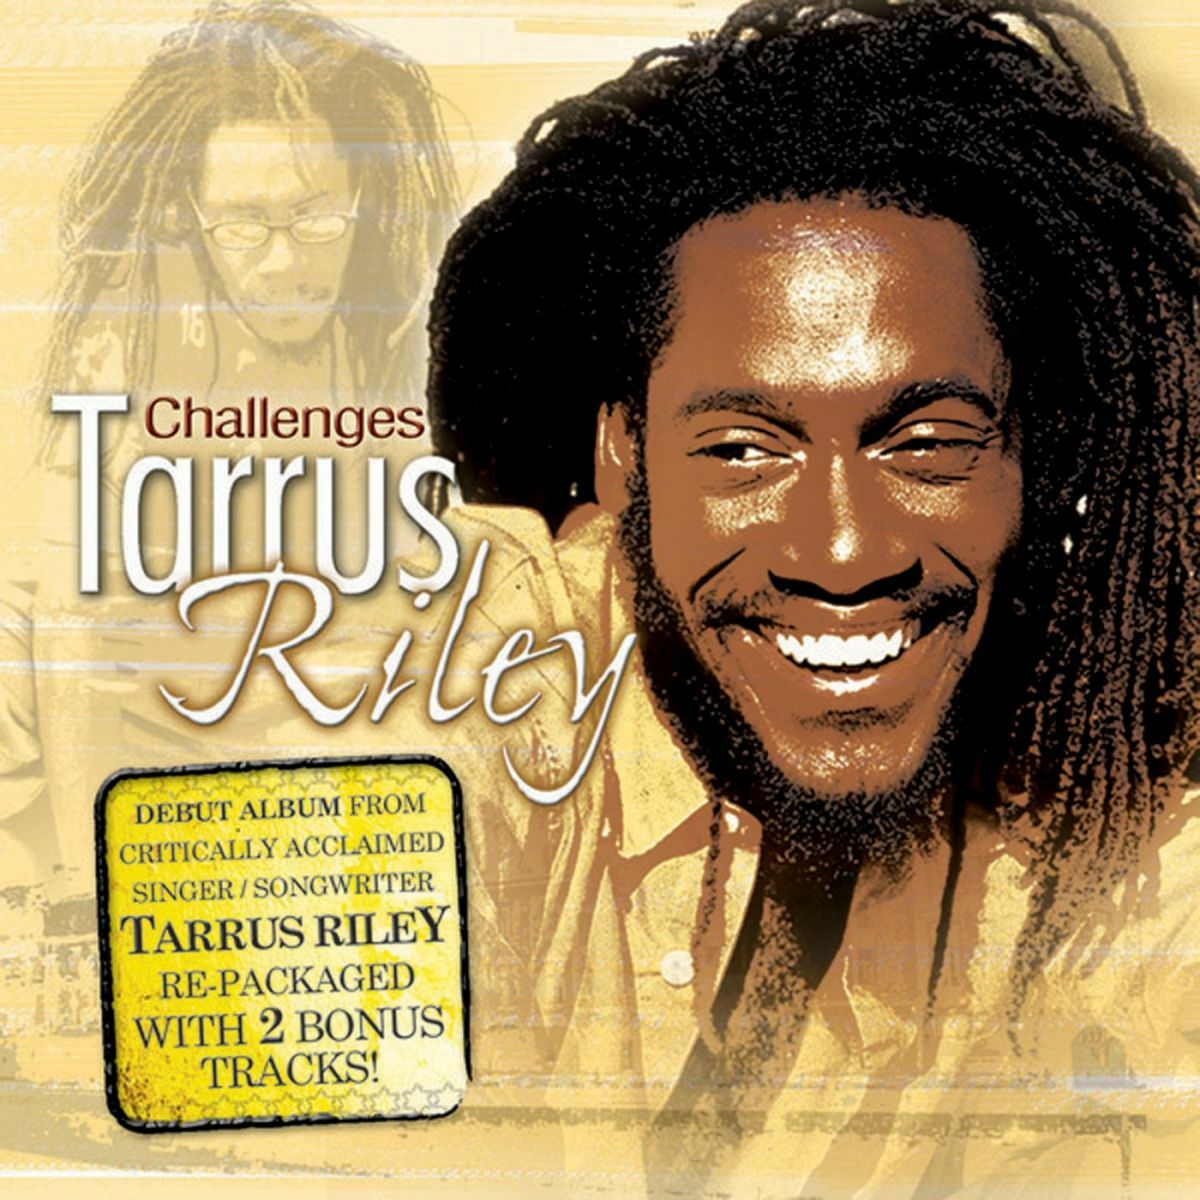 Tarrus Riley: albums, songs, playlists | Listen on Deezer